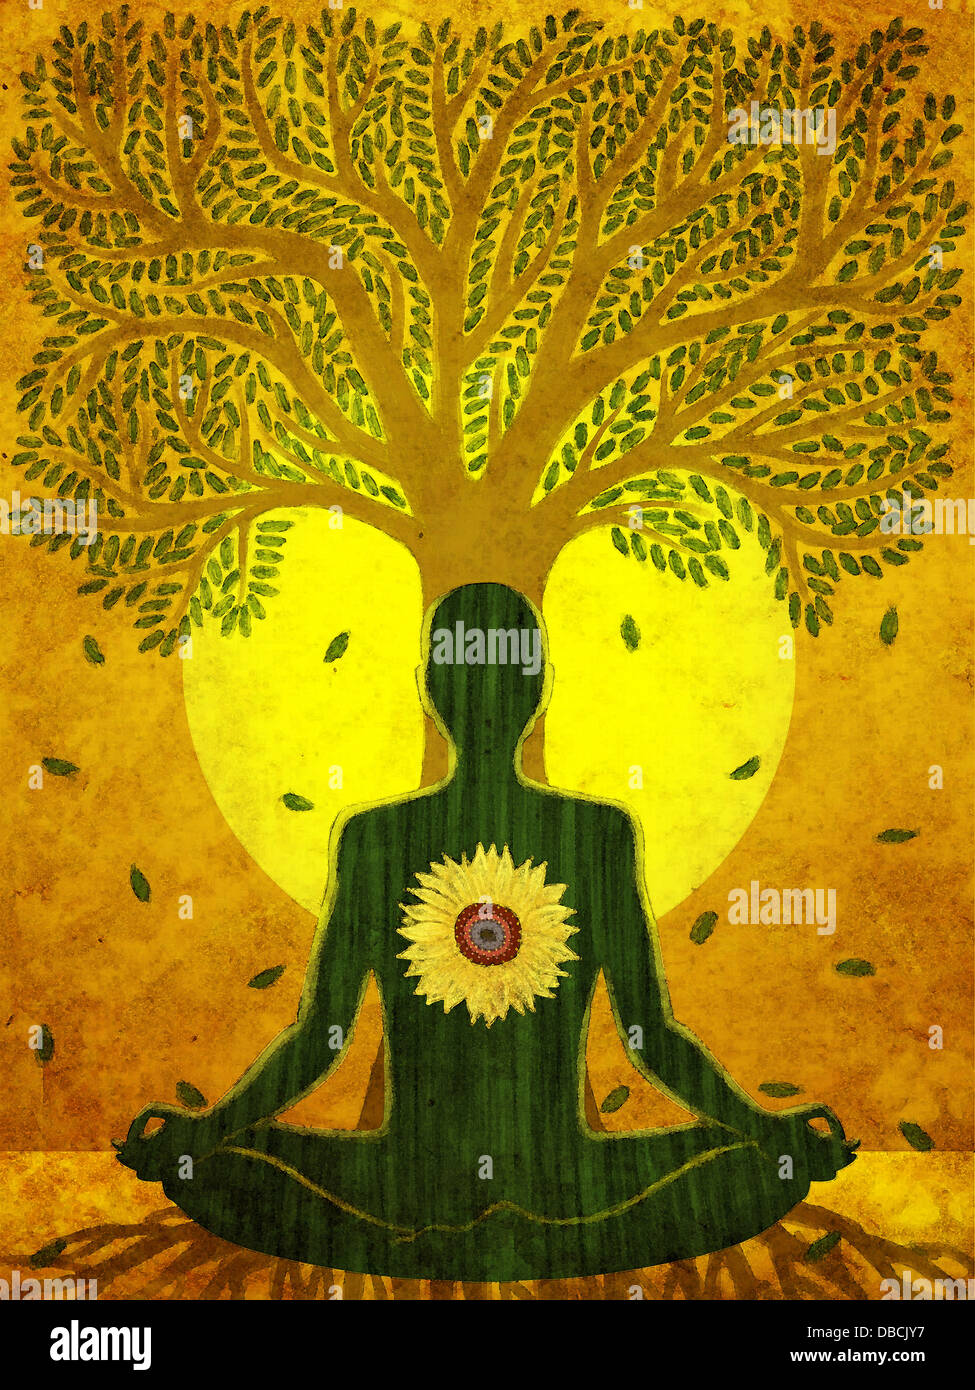 Illustration de l'homme méditant contre l'arbre et le soleil Banque D'Images